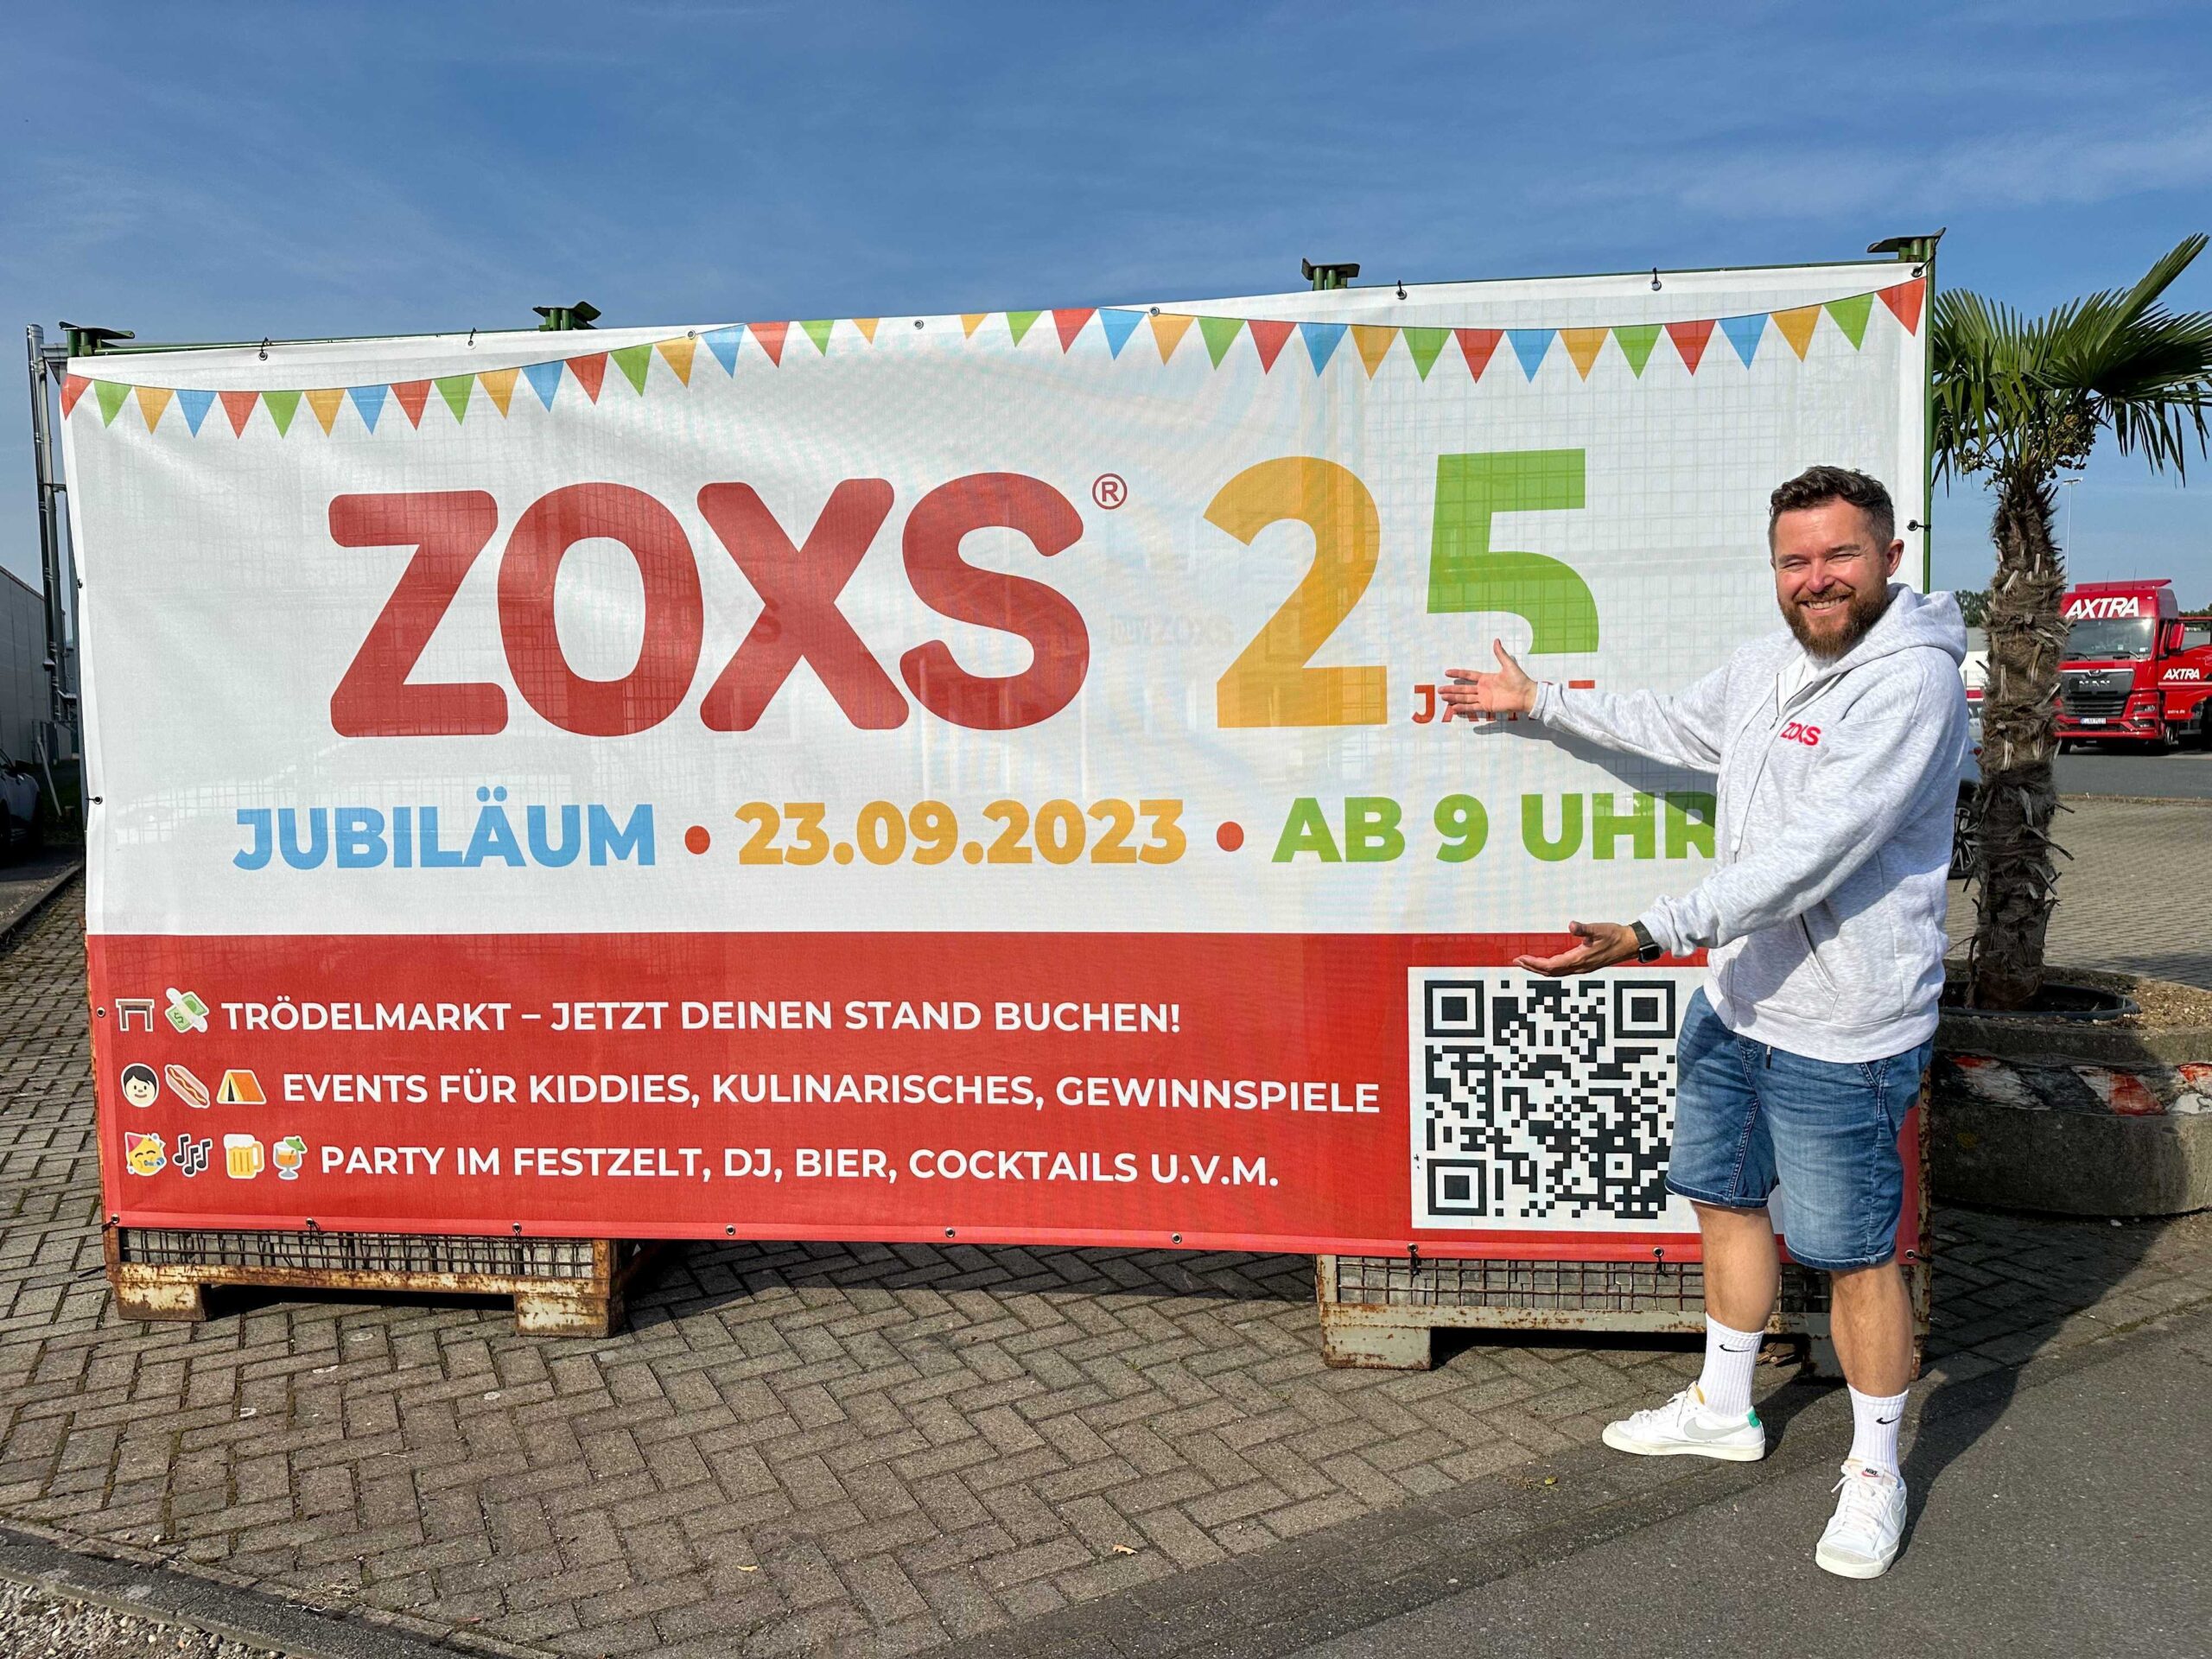 ZOXS feiert 25 Jahre mit einzigartigem Familienfest & Trödelmarkt